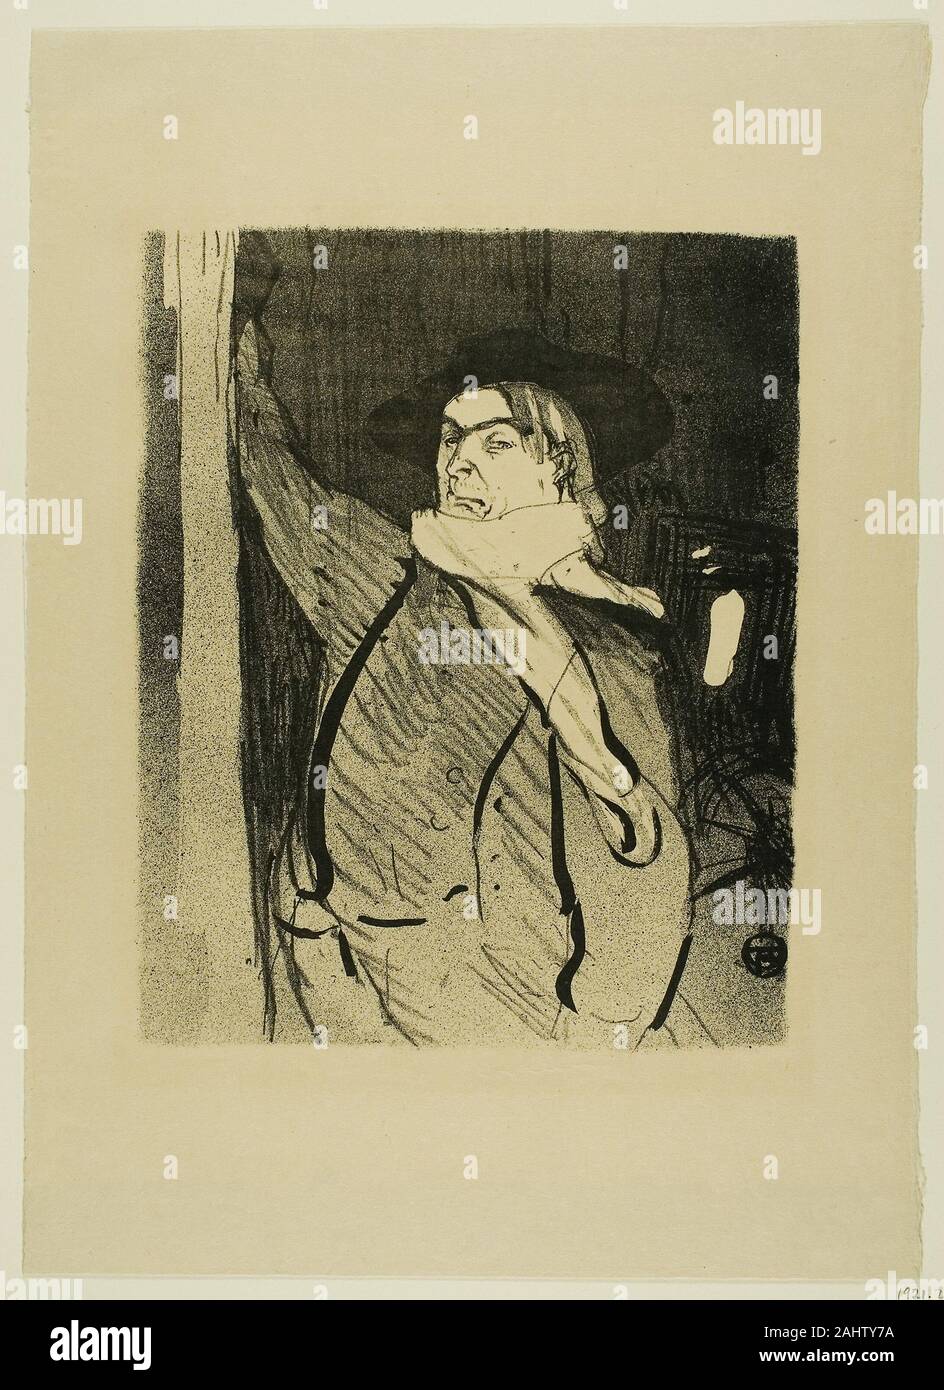 Henri de Toulouse-Lautrec. Aristide Bruant, from Le Café-Concert. 1893. France. Lithograph on cream wove paper Stock Photo